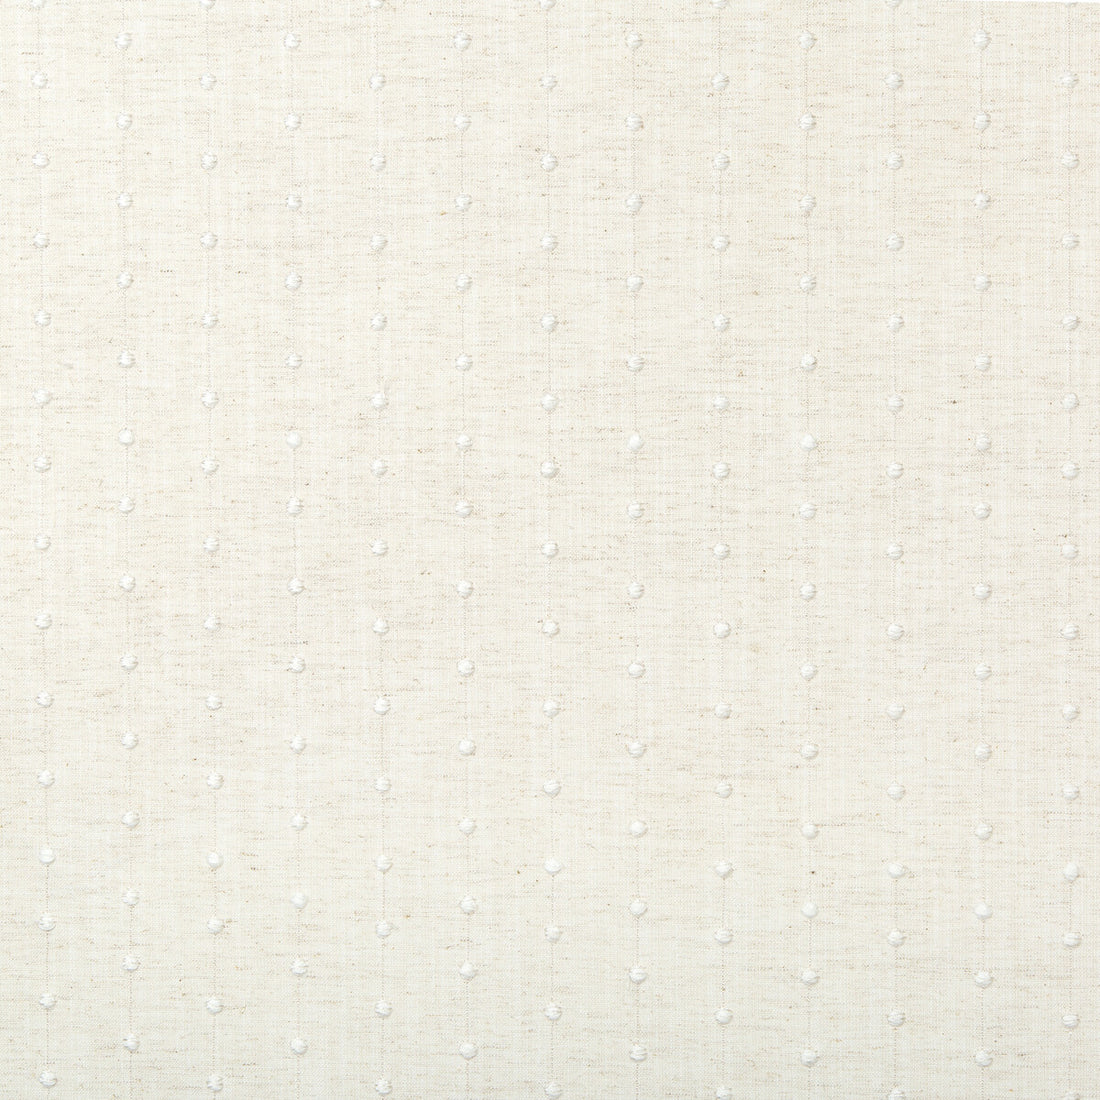 Kravet Basics fabric in 36130-1 color - pattern 36130.1.0 - by Kravet Basics